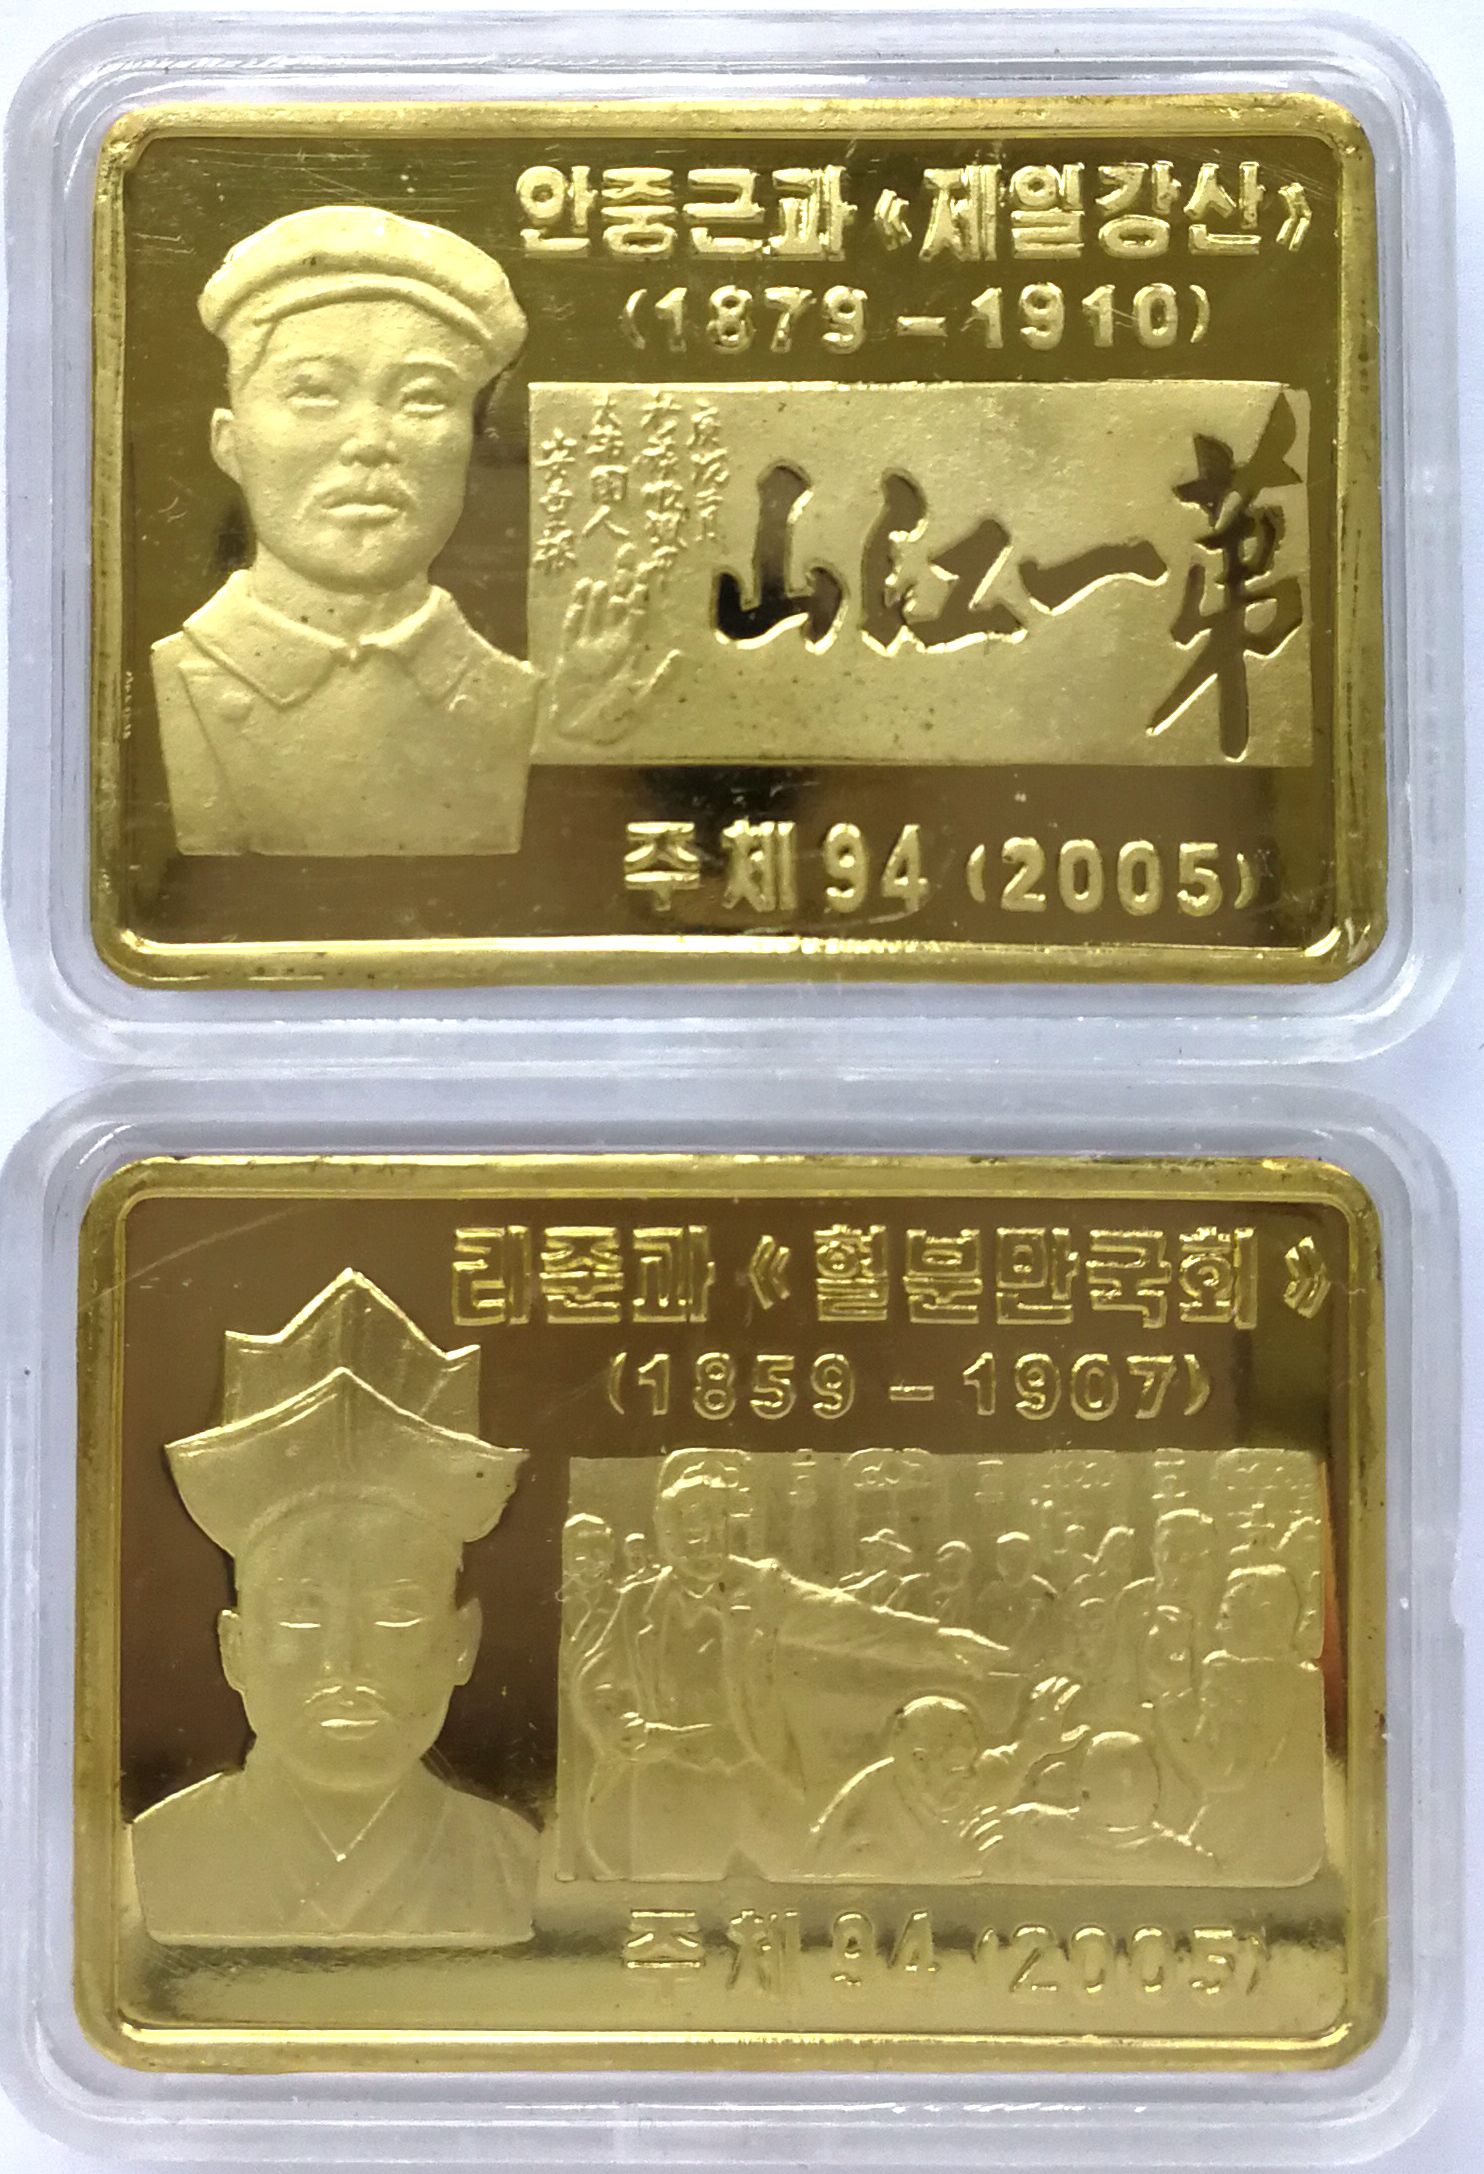 L3106, Korea 2 Pcs Coins, Patriotic "An Jung-geun" and "Lee Jun", 2005 Brass